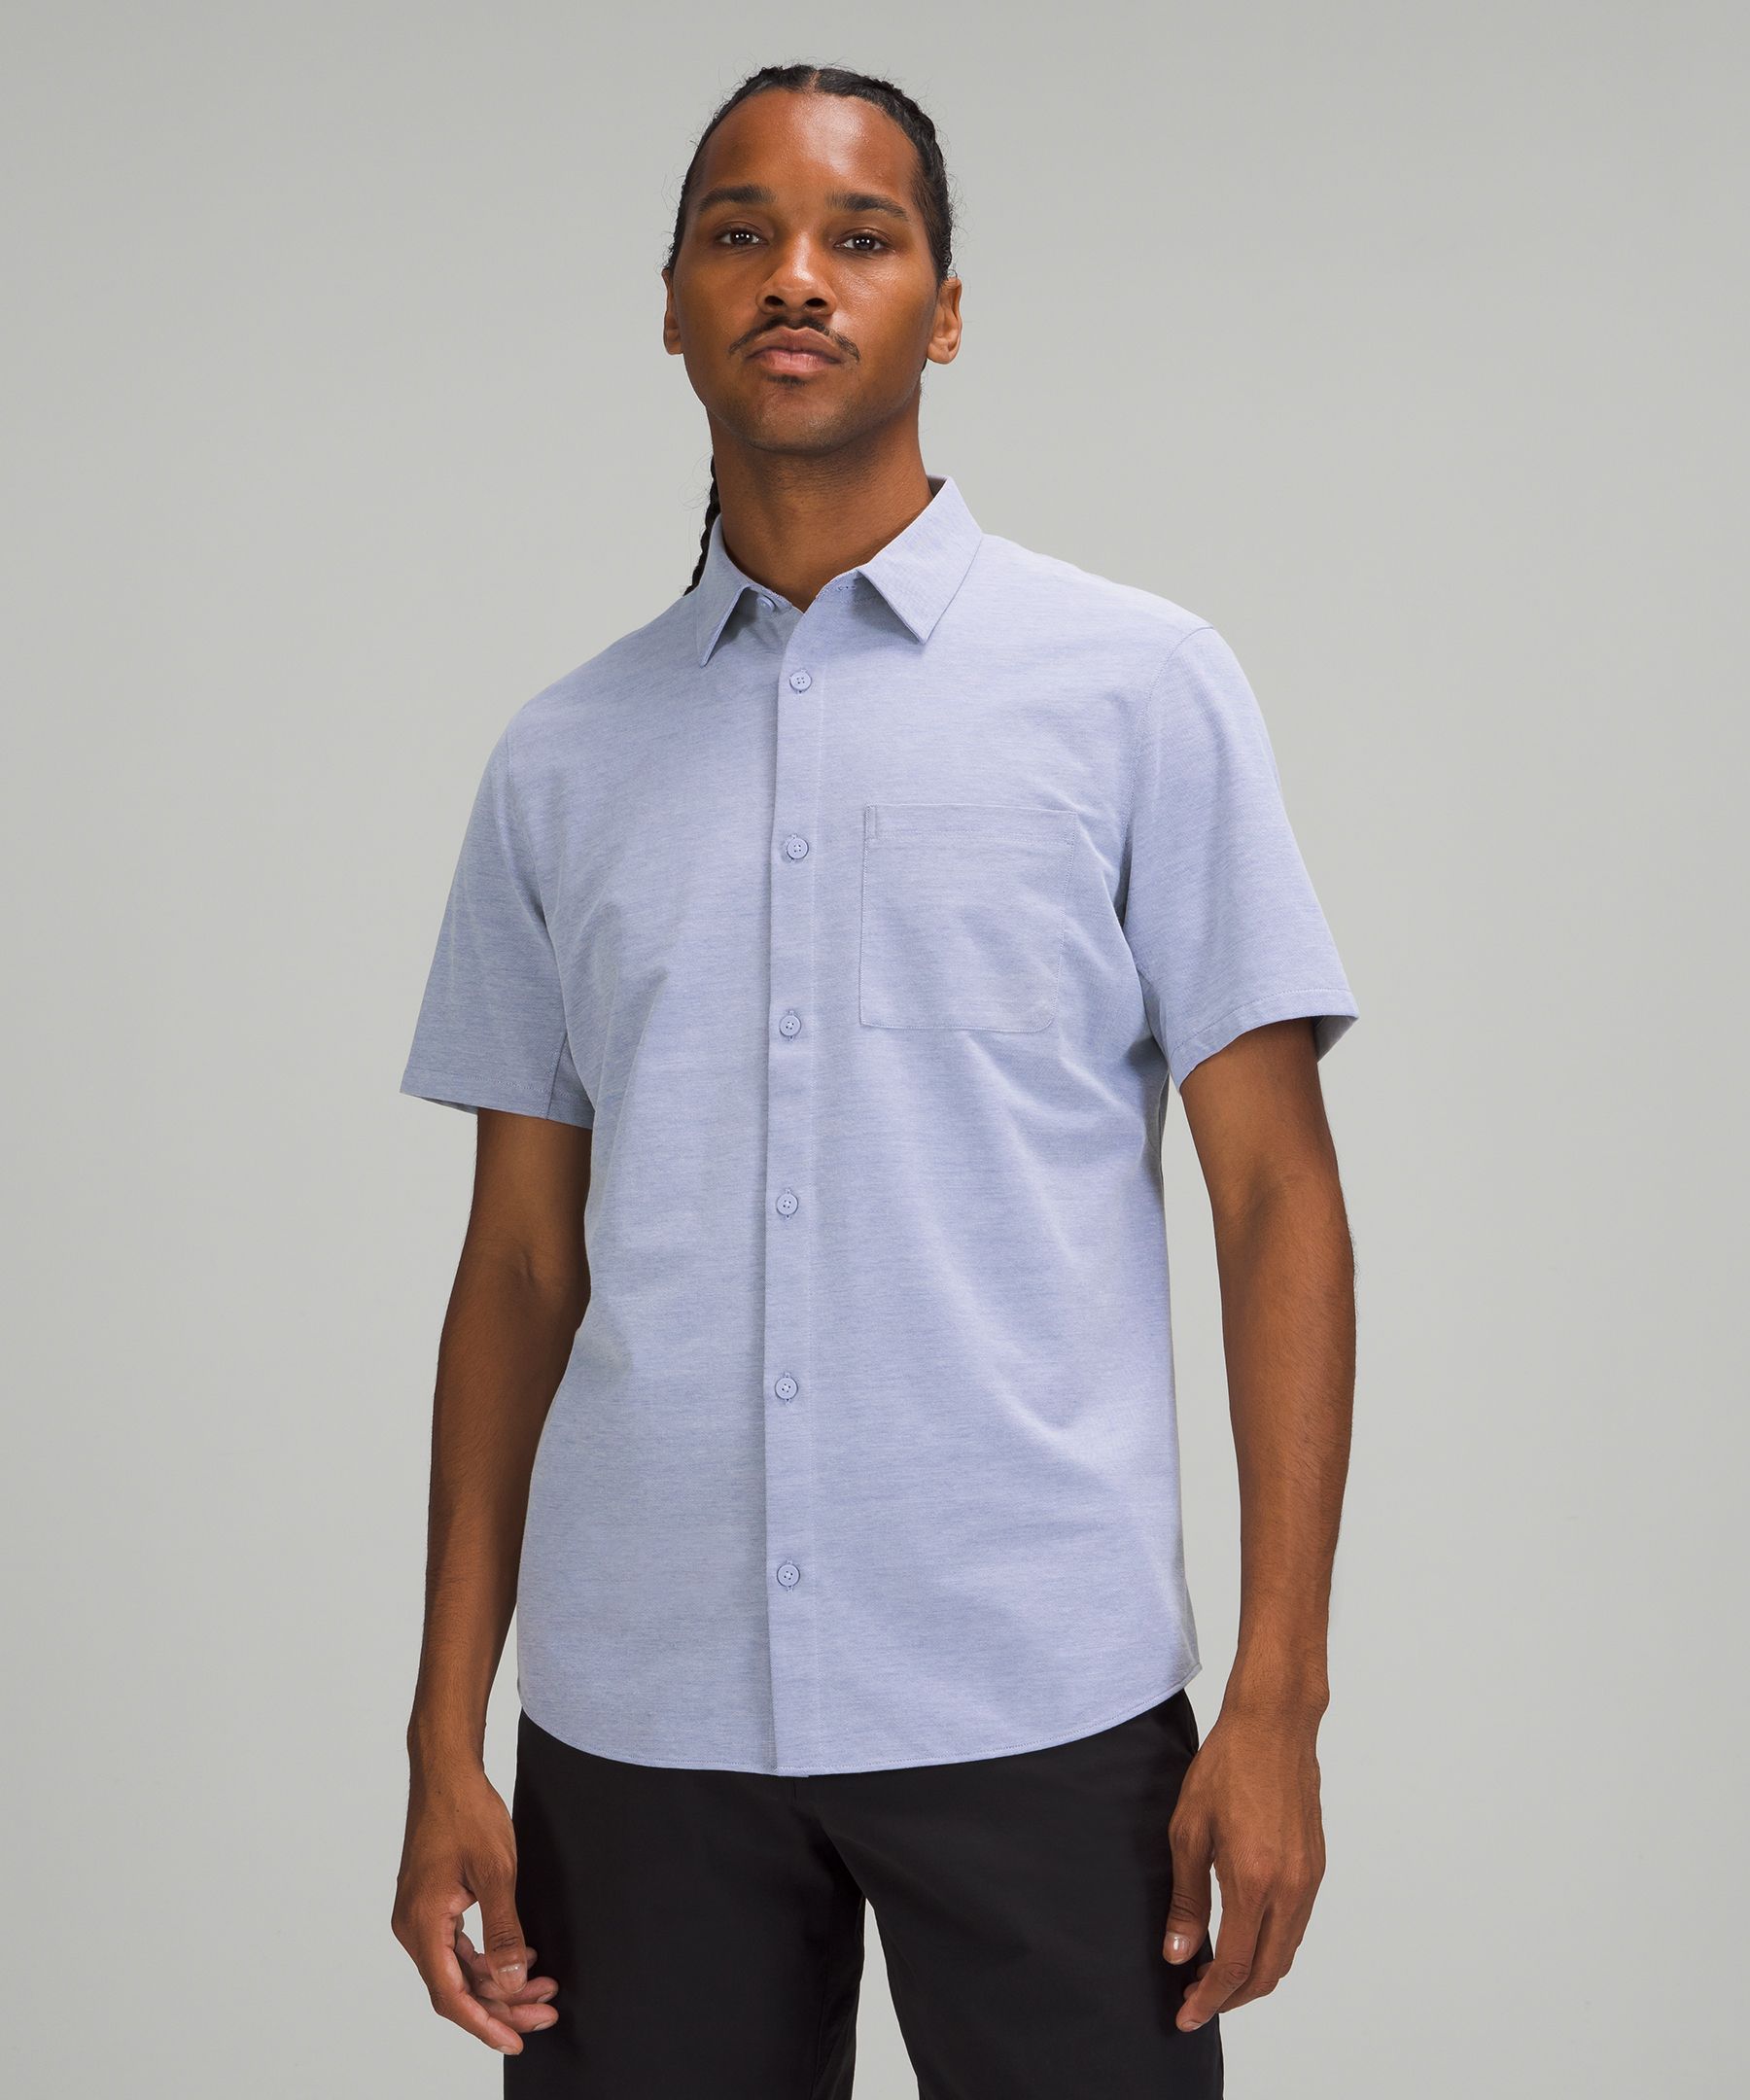 Lululemon Commission Short Sleeve Shirt In Harbor Blue/white | ModeSens